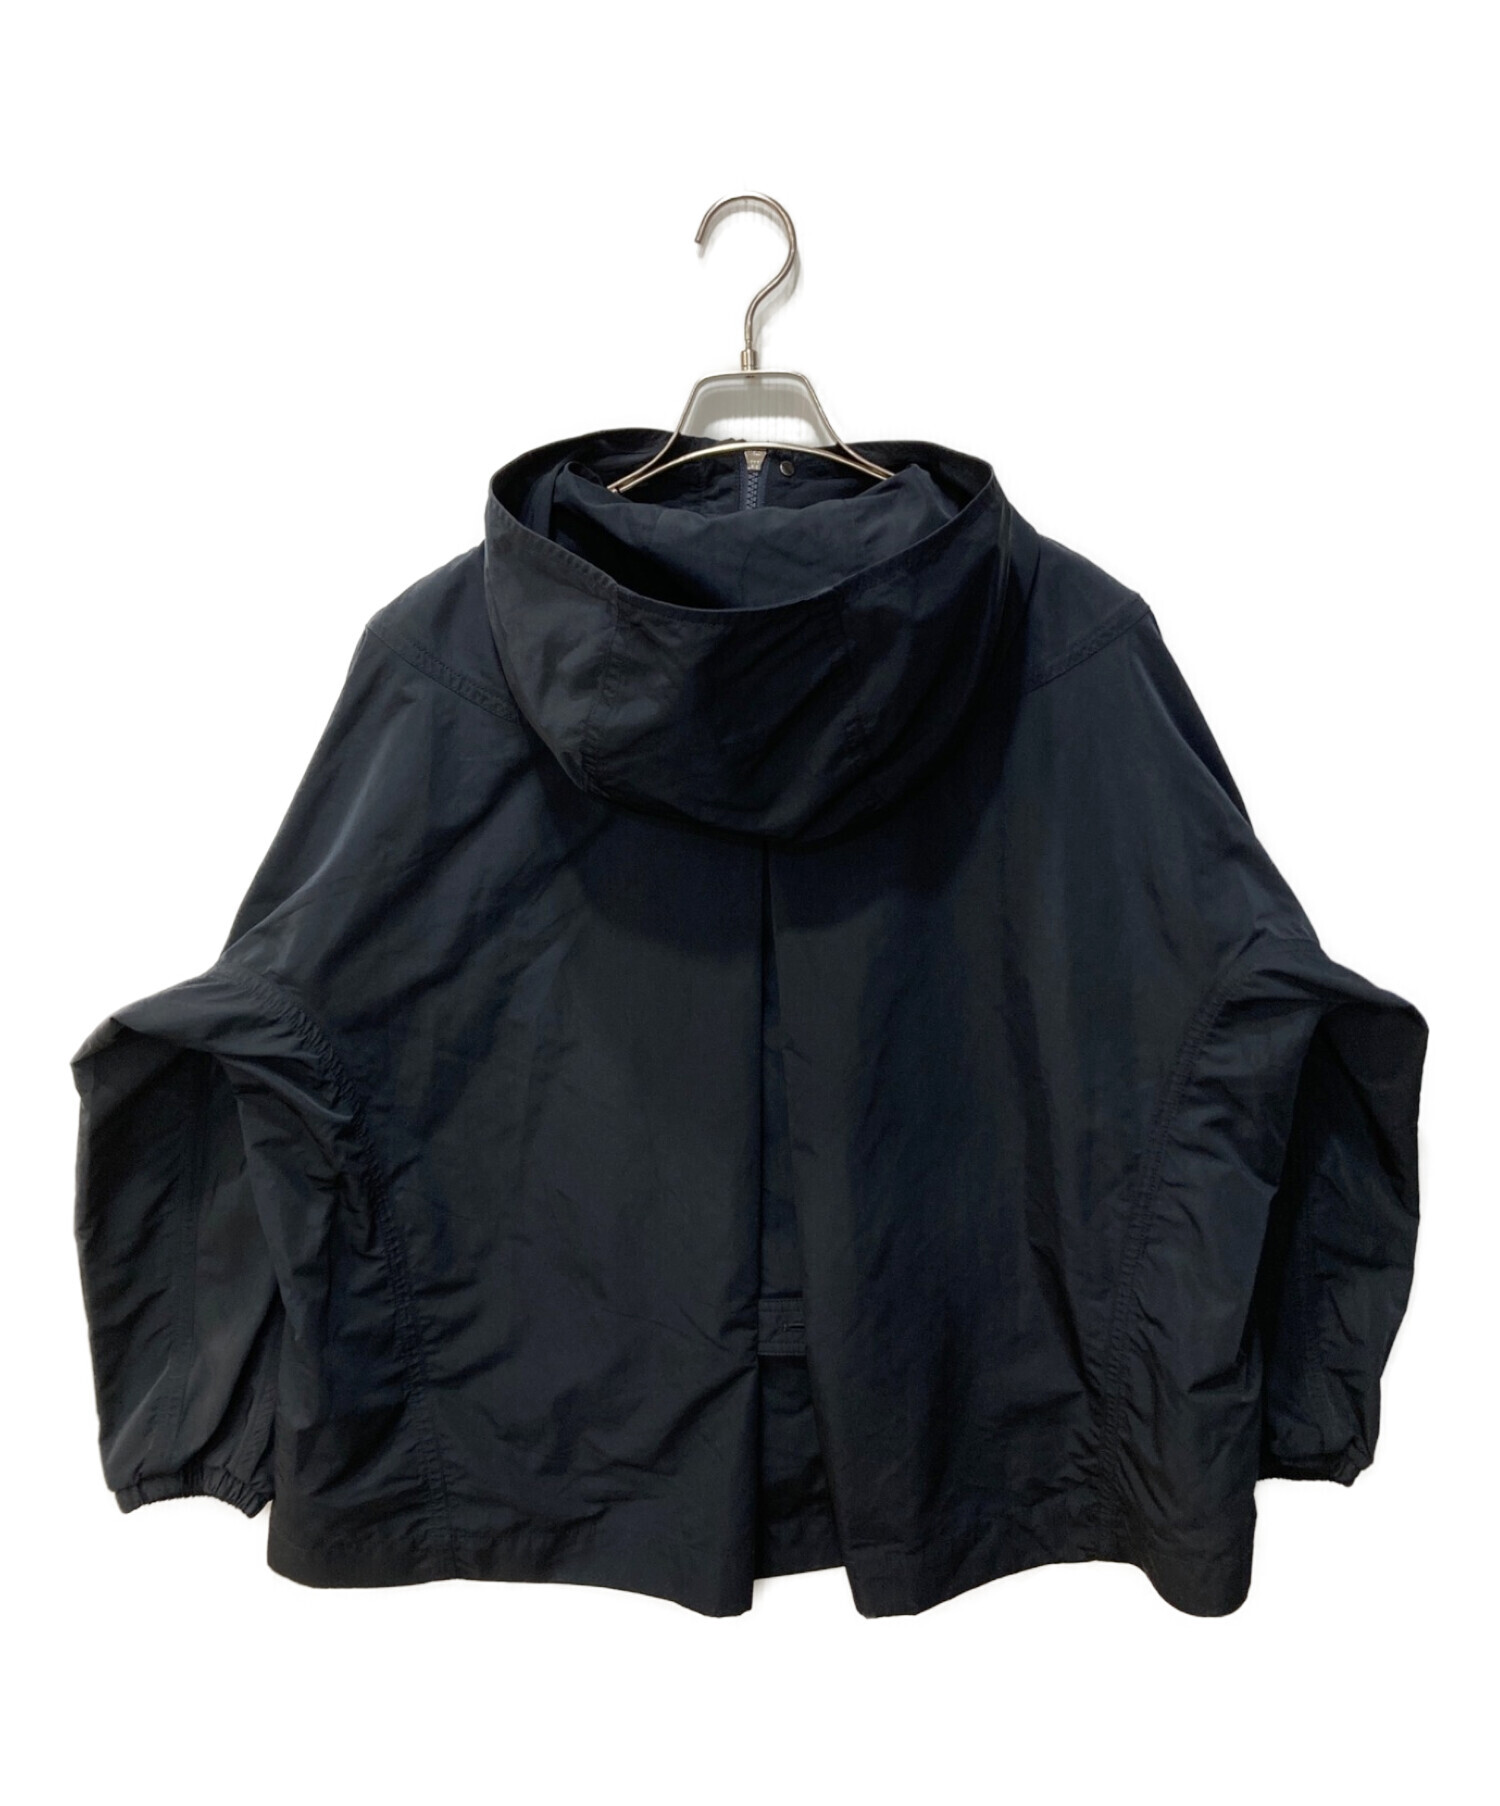 Gymphlex (ジムフレックス) マイクロタフタフードジャケット ブラック サイズ:М